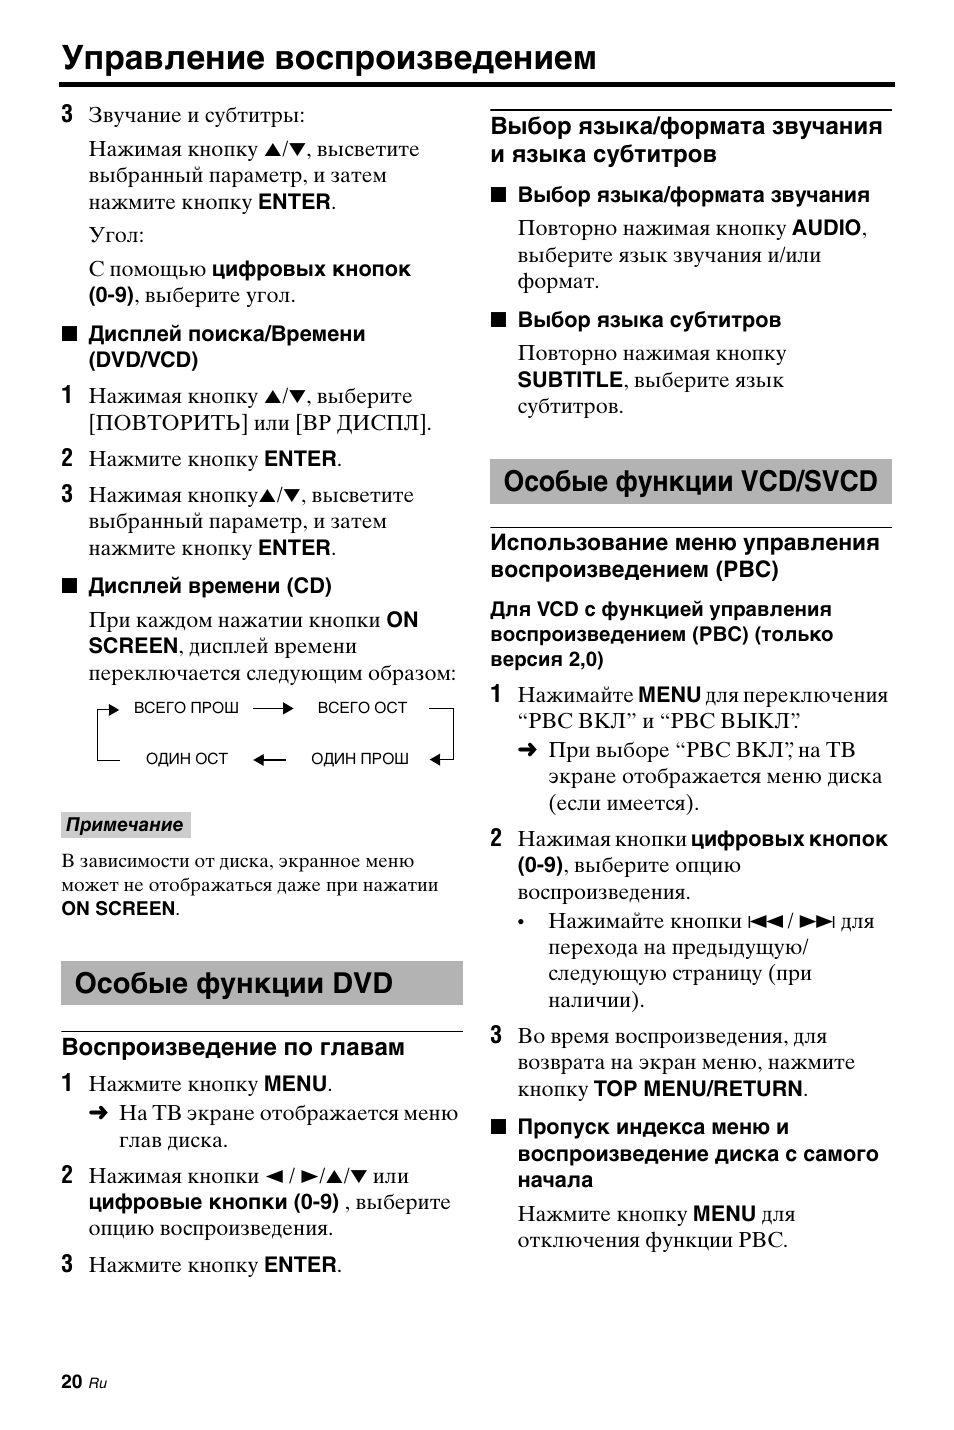 Особые функции dvd, Особые функции vcd/svcd, Управление воспроизведением | Инструкция по эксплуатации Yamaha DVD-S663 | Страница 73 / 102